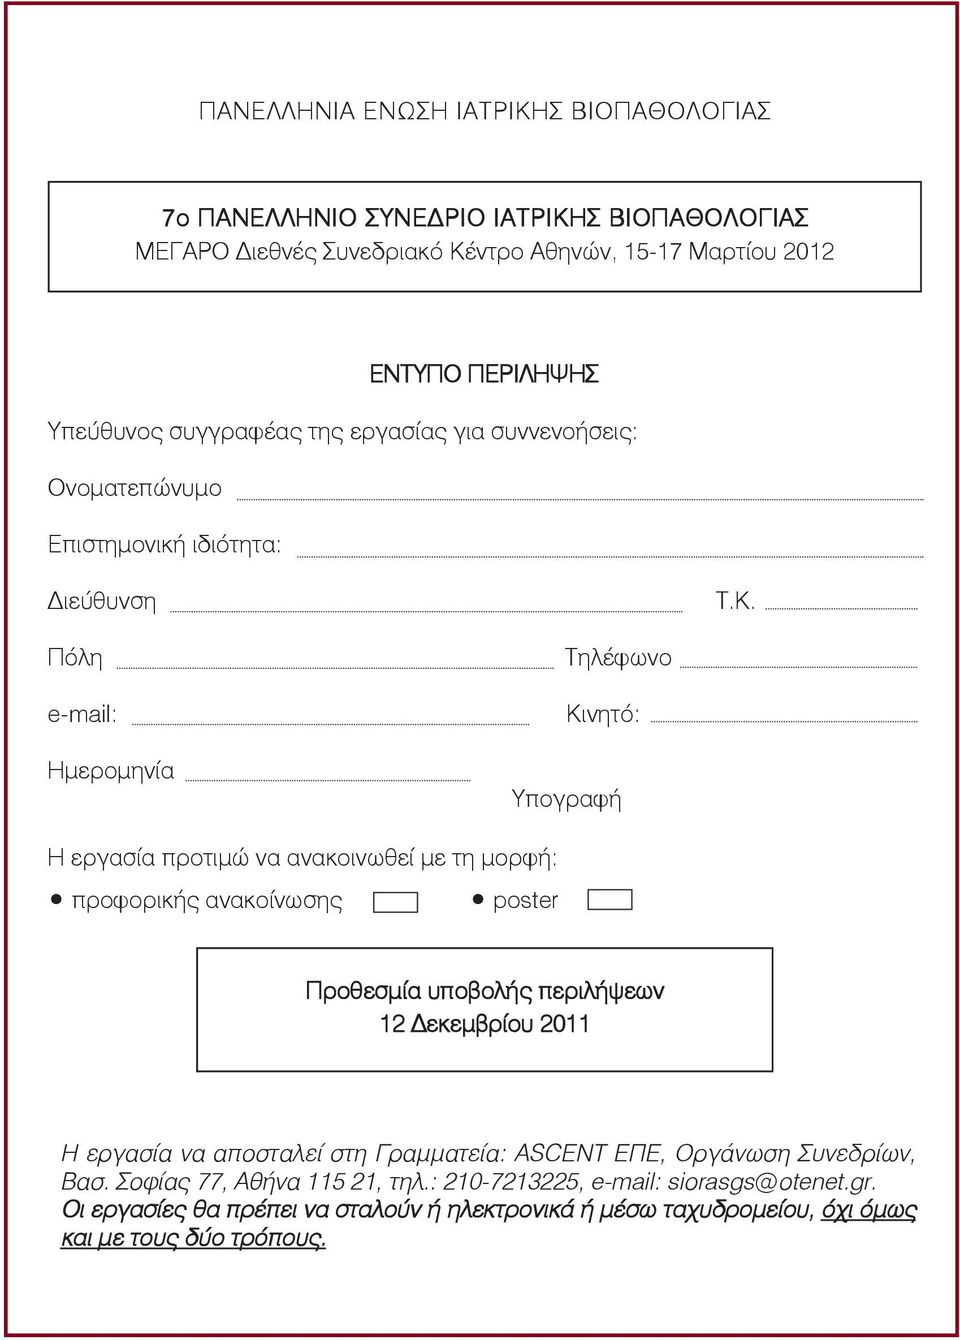 Πόλη e-mail: Ημερομηνία Τηλέφωνο Kινητό: Υπογραφή Η εργασία προτιμώ να ανακοινωθεί με τη μορφή: προφορικής ανακοίνωσης poster Προθεσμία υποβολής περιλήψεων 12 Δεκεμβρίου